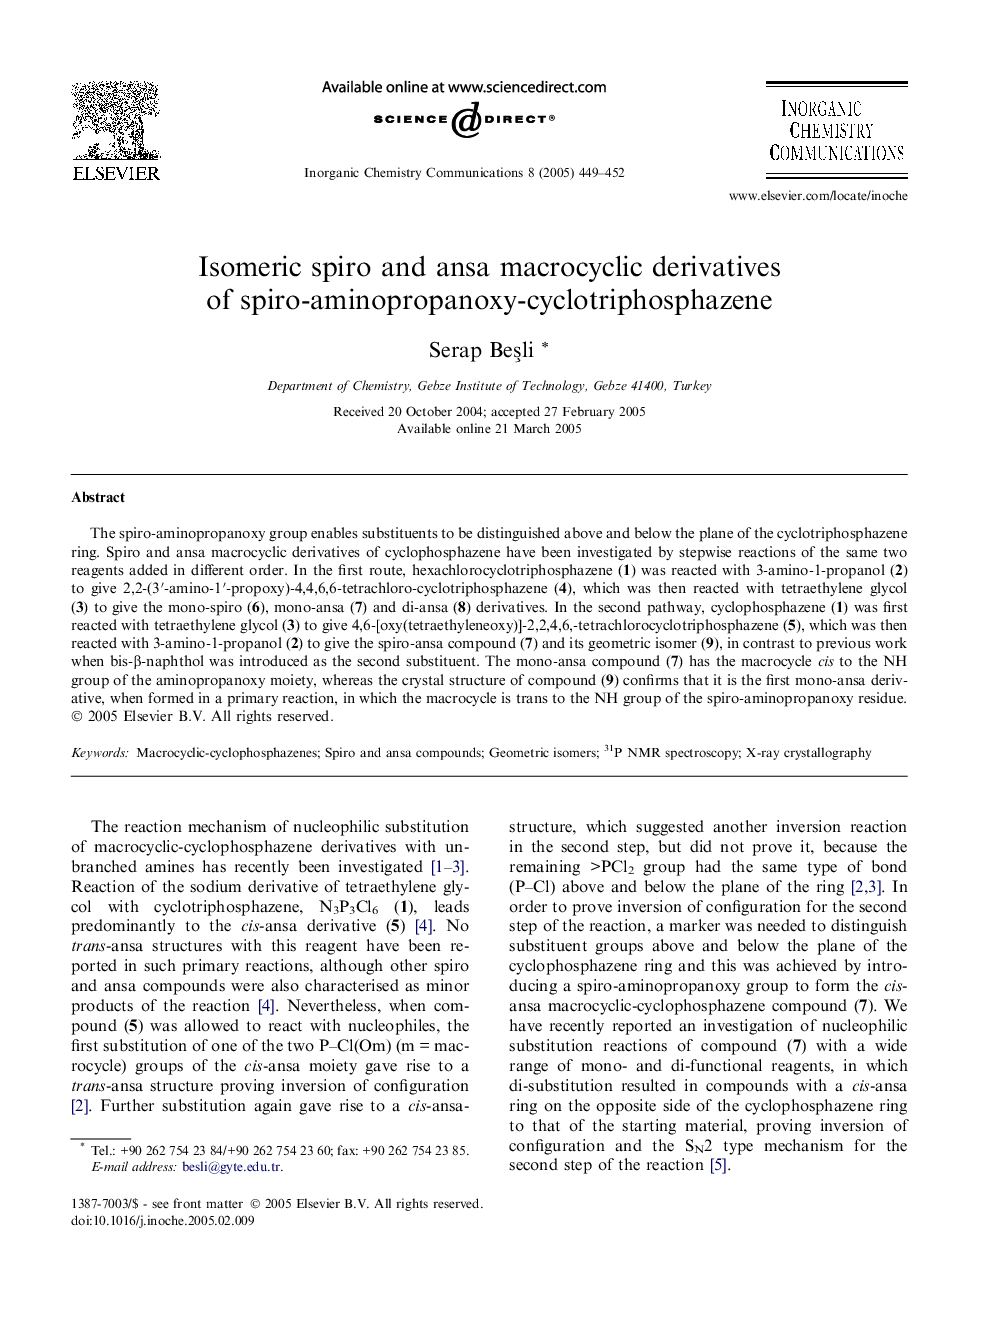 Isomeric spiro and ansa macrocyclic derivatives of spiro-aminopropanoxy-cyclotriphosphazene